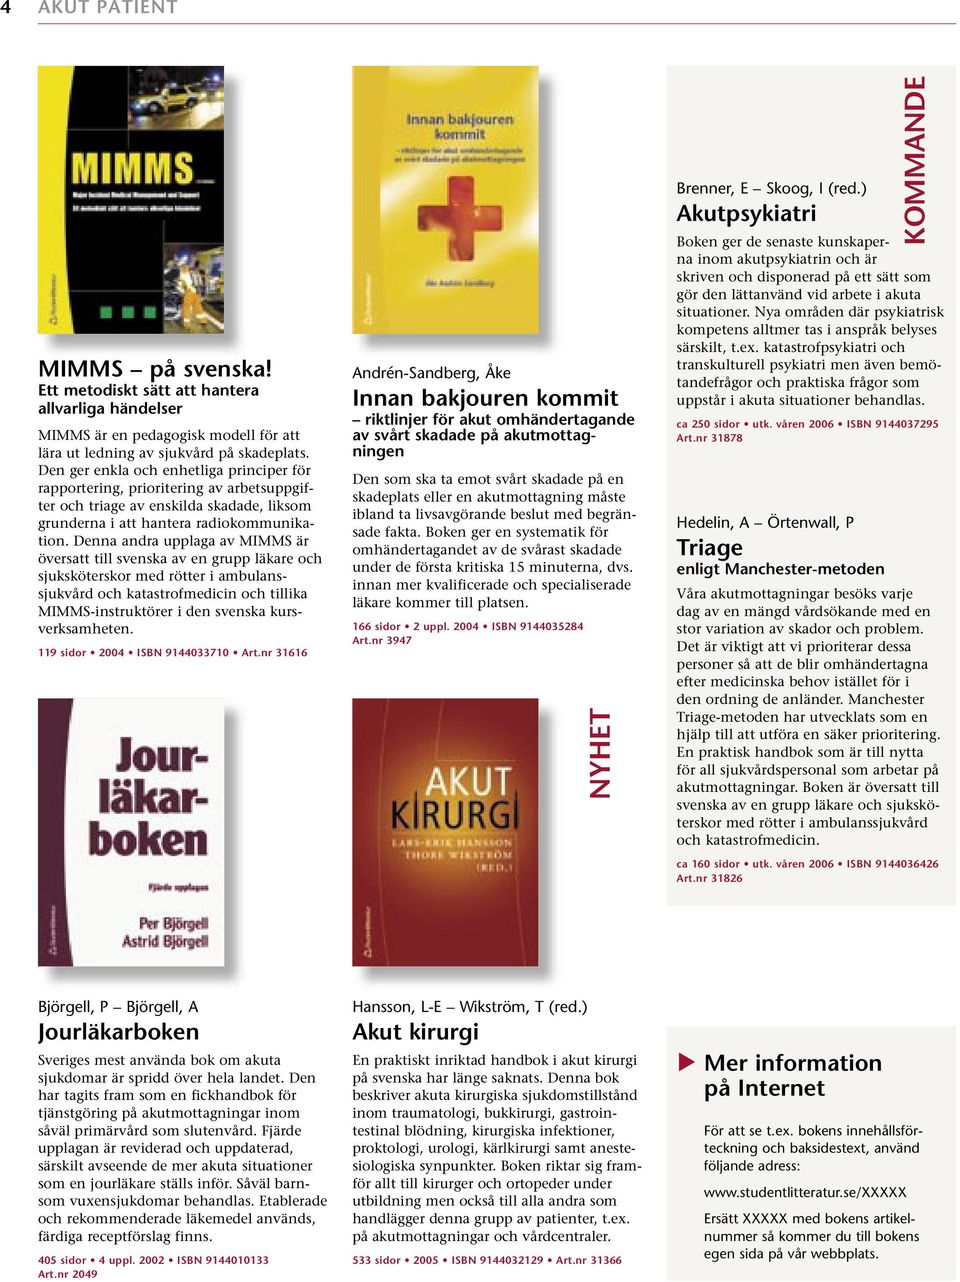 Denna andra upplaga av MIMMS är översatt till svenska av en grupp läkare och sjuksköterskor med rötter i ambulanssjukvård och katastrofmedicin och tillika MIMMS-instruktörer i den svenska